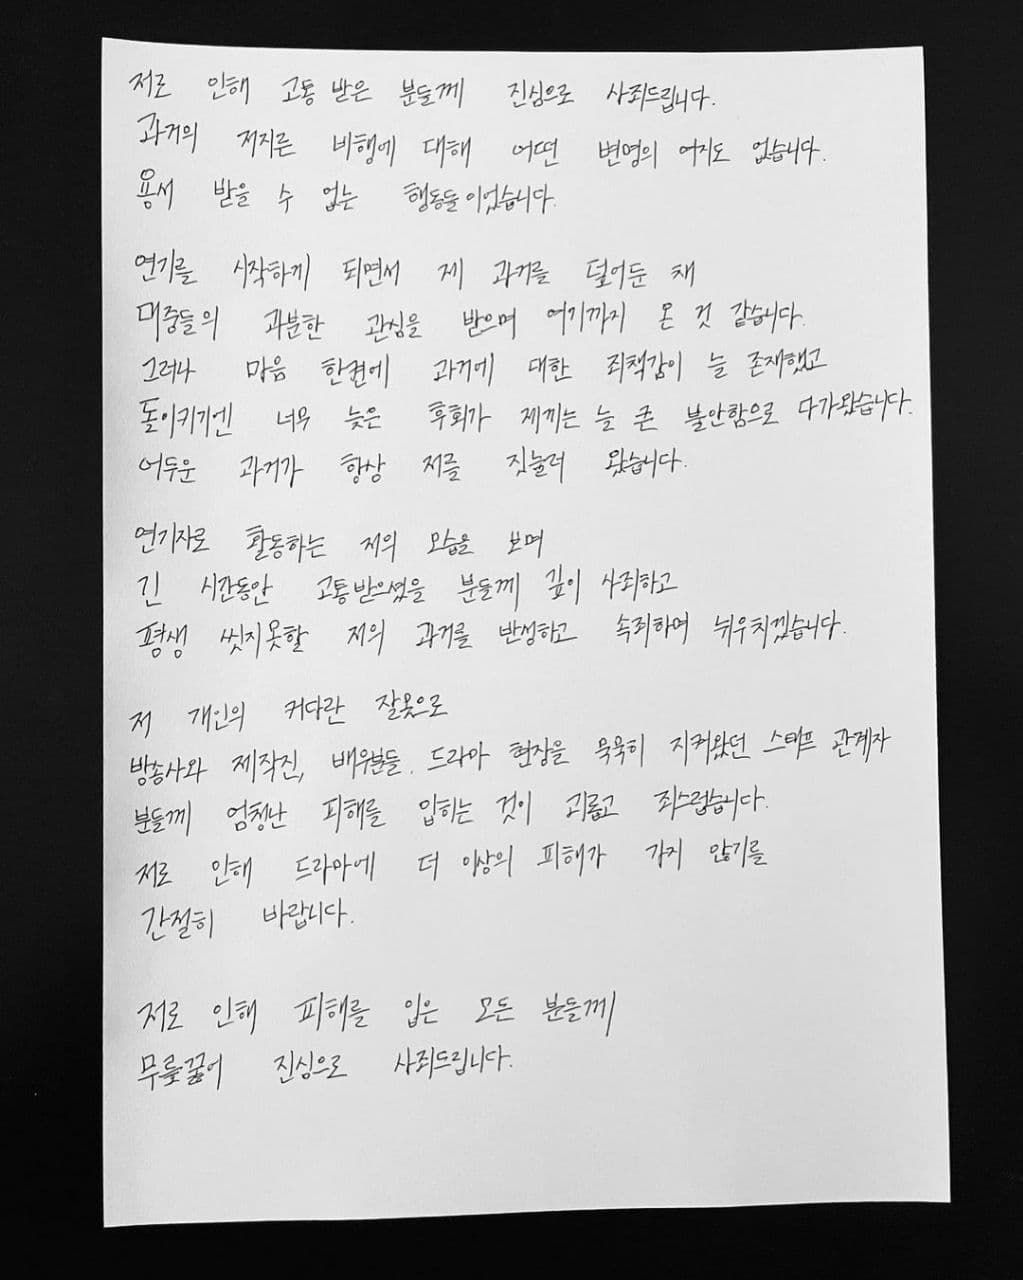 Ji Soo akhirnya buka suara terkait tuduhan kasus kekerasan dan bullying di sekolah yang ditulis tangan dan dibagikan melalui Instagram pribadinya.